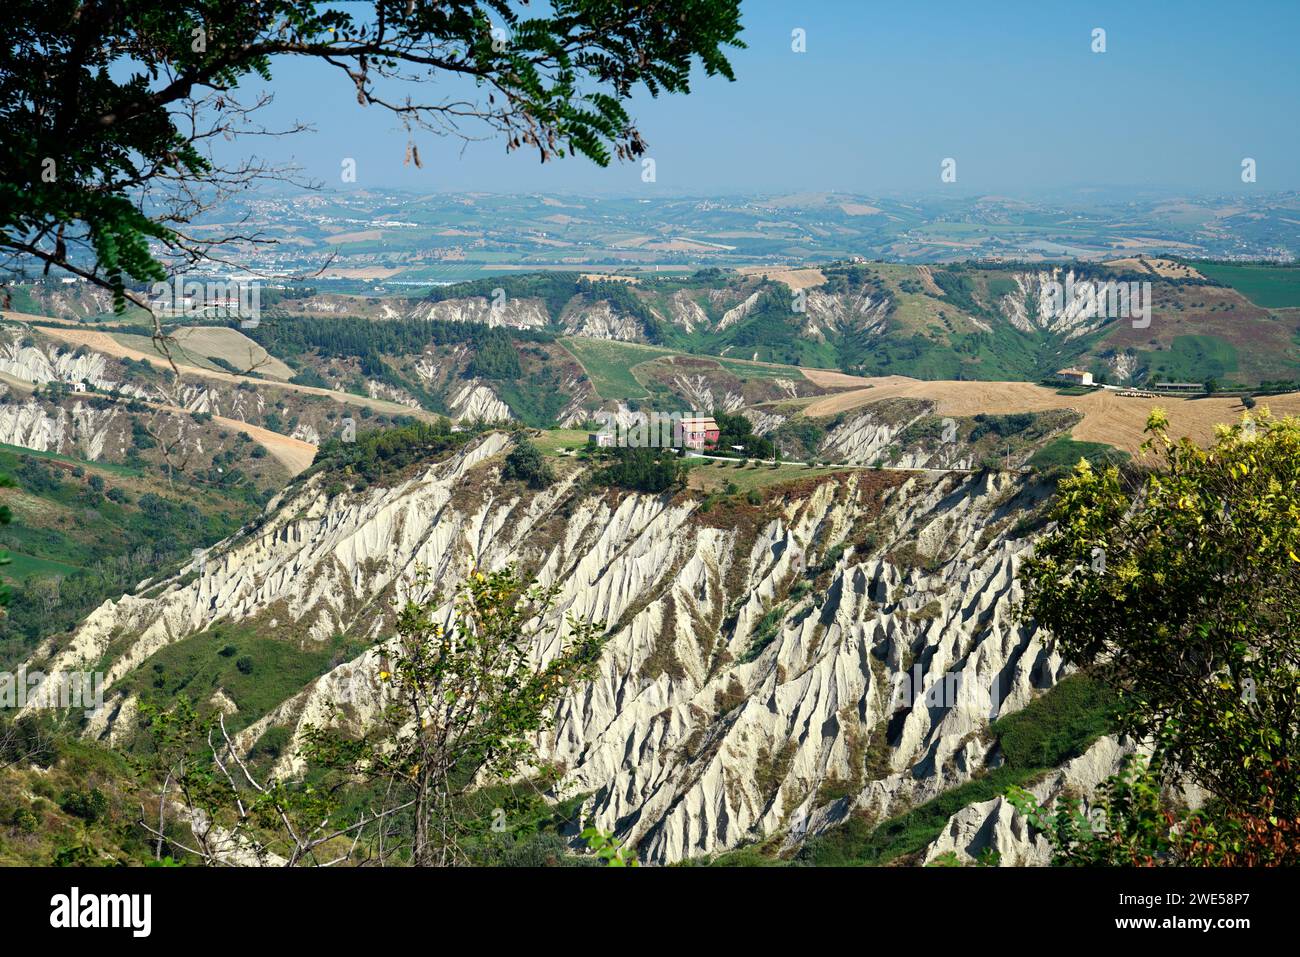 riserva naturale guidata Calanchi, Atri,province of Teramo,region of Abruzzo, Italy Stock Photo